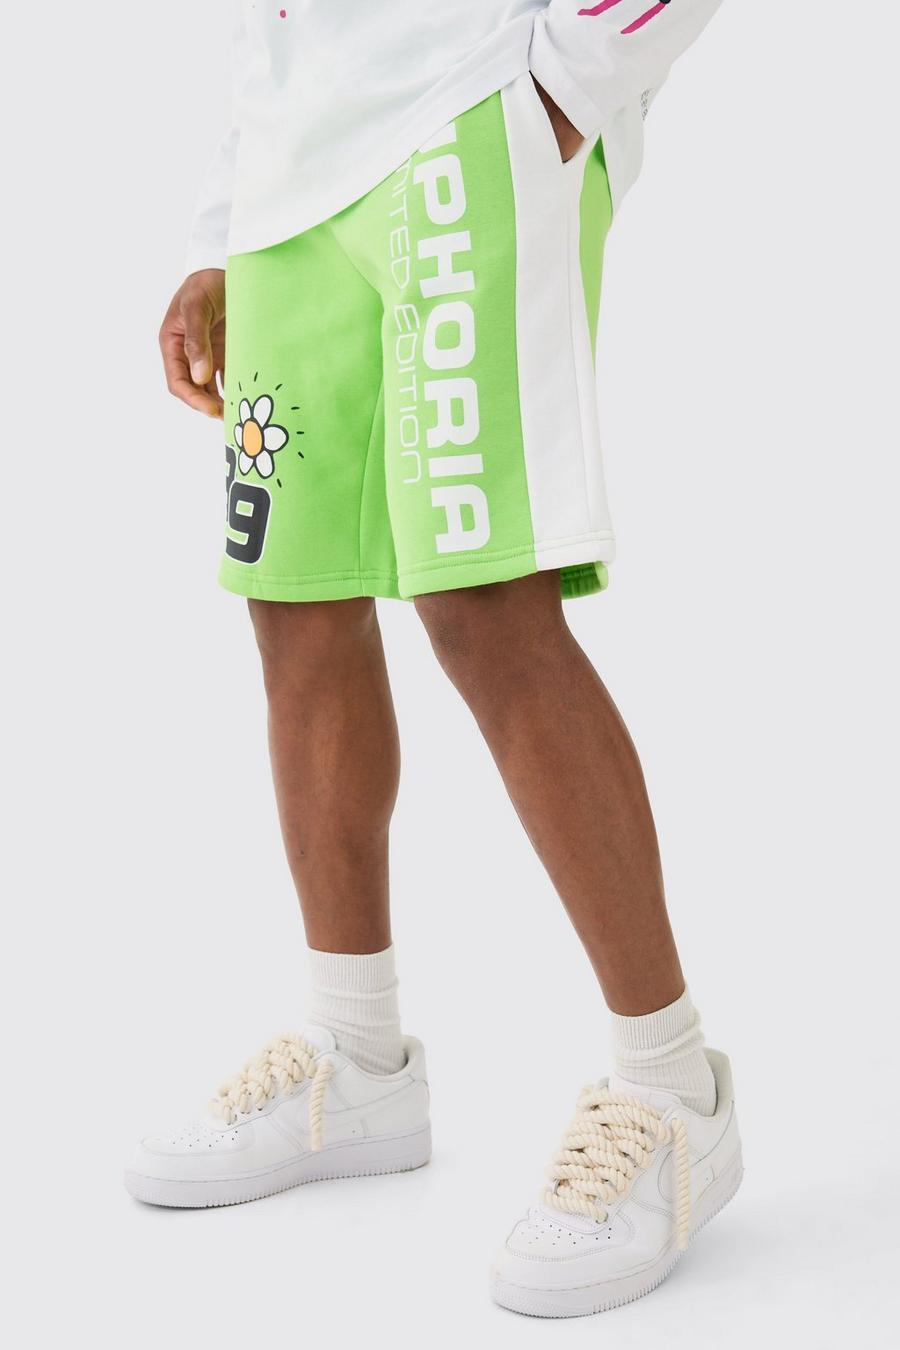 Pantaloncini da basket lunghi con grafica Euphoria, Green